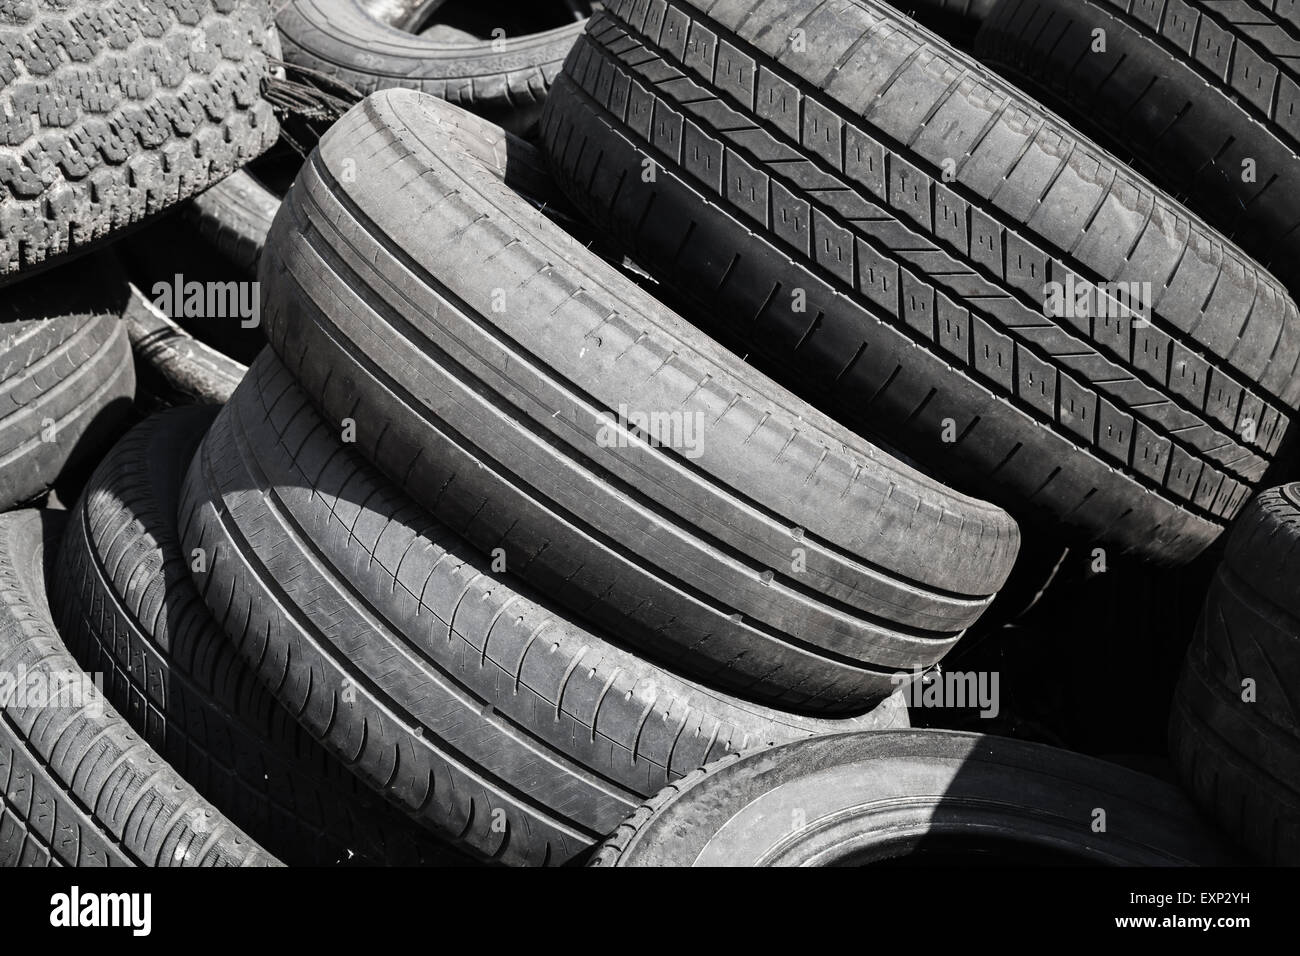 Tas de vieux utilisé les pneus de l'automobile Banque D'Images